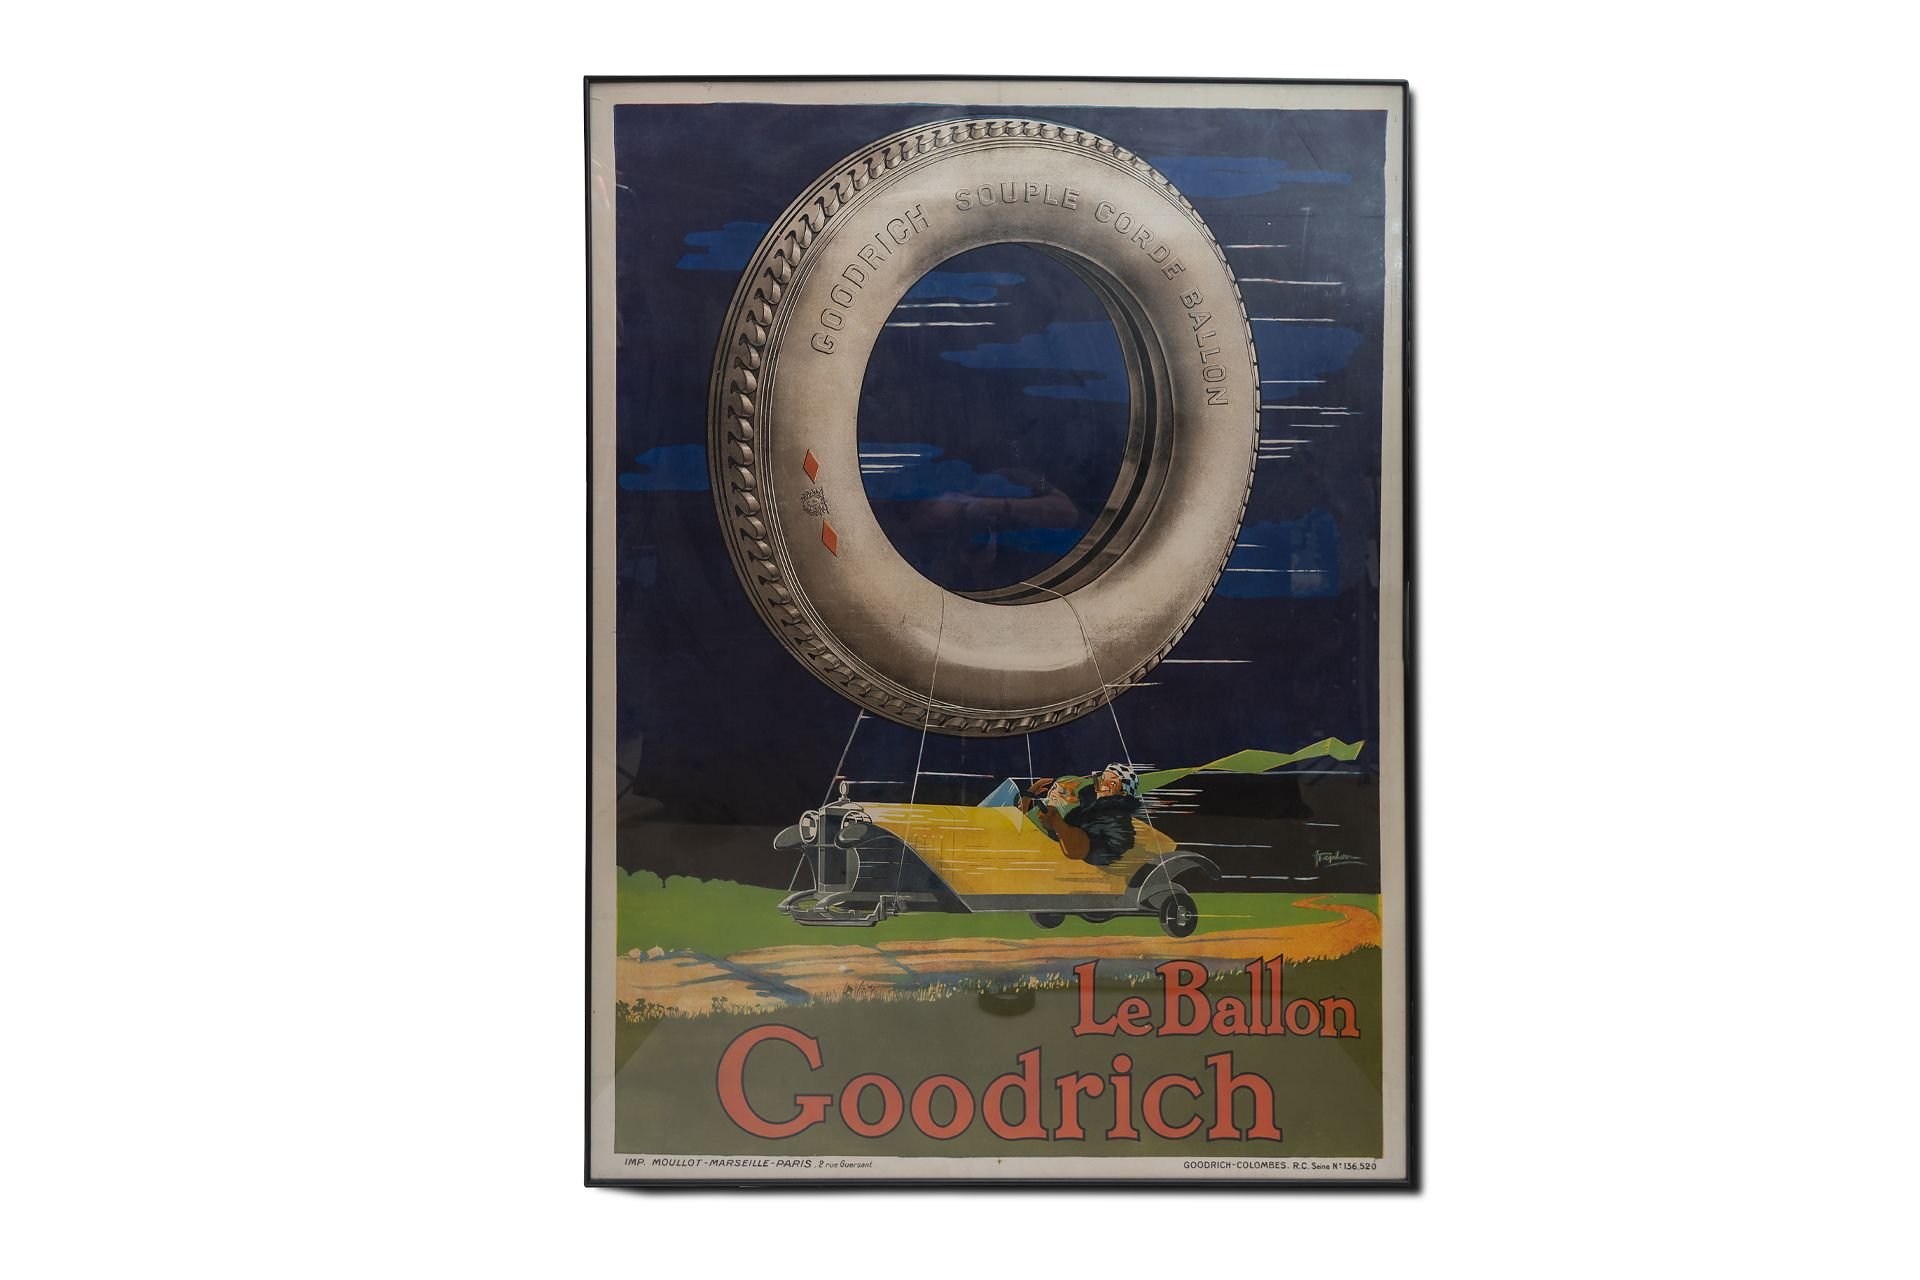 For Sale Framed Original Rare "LeBallon Goodrich Tire' Advertising Poster